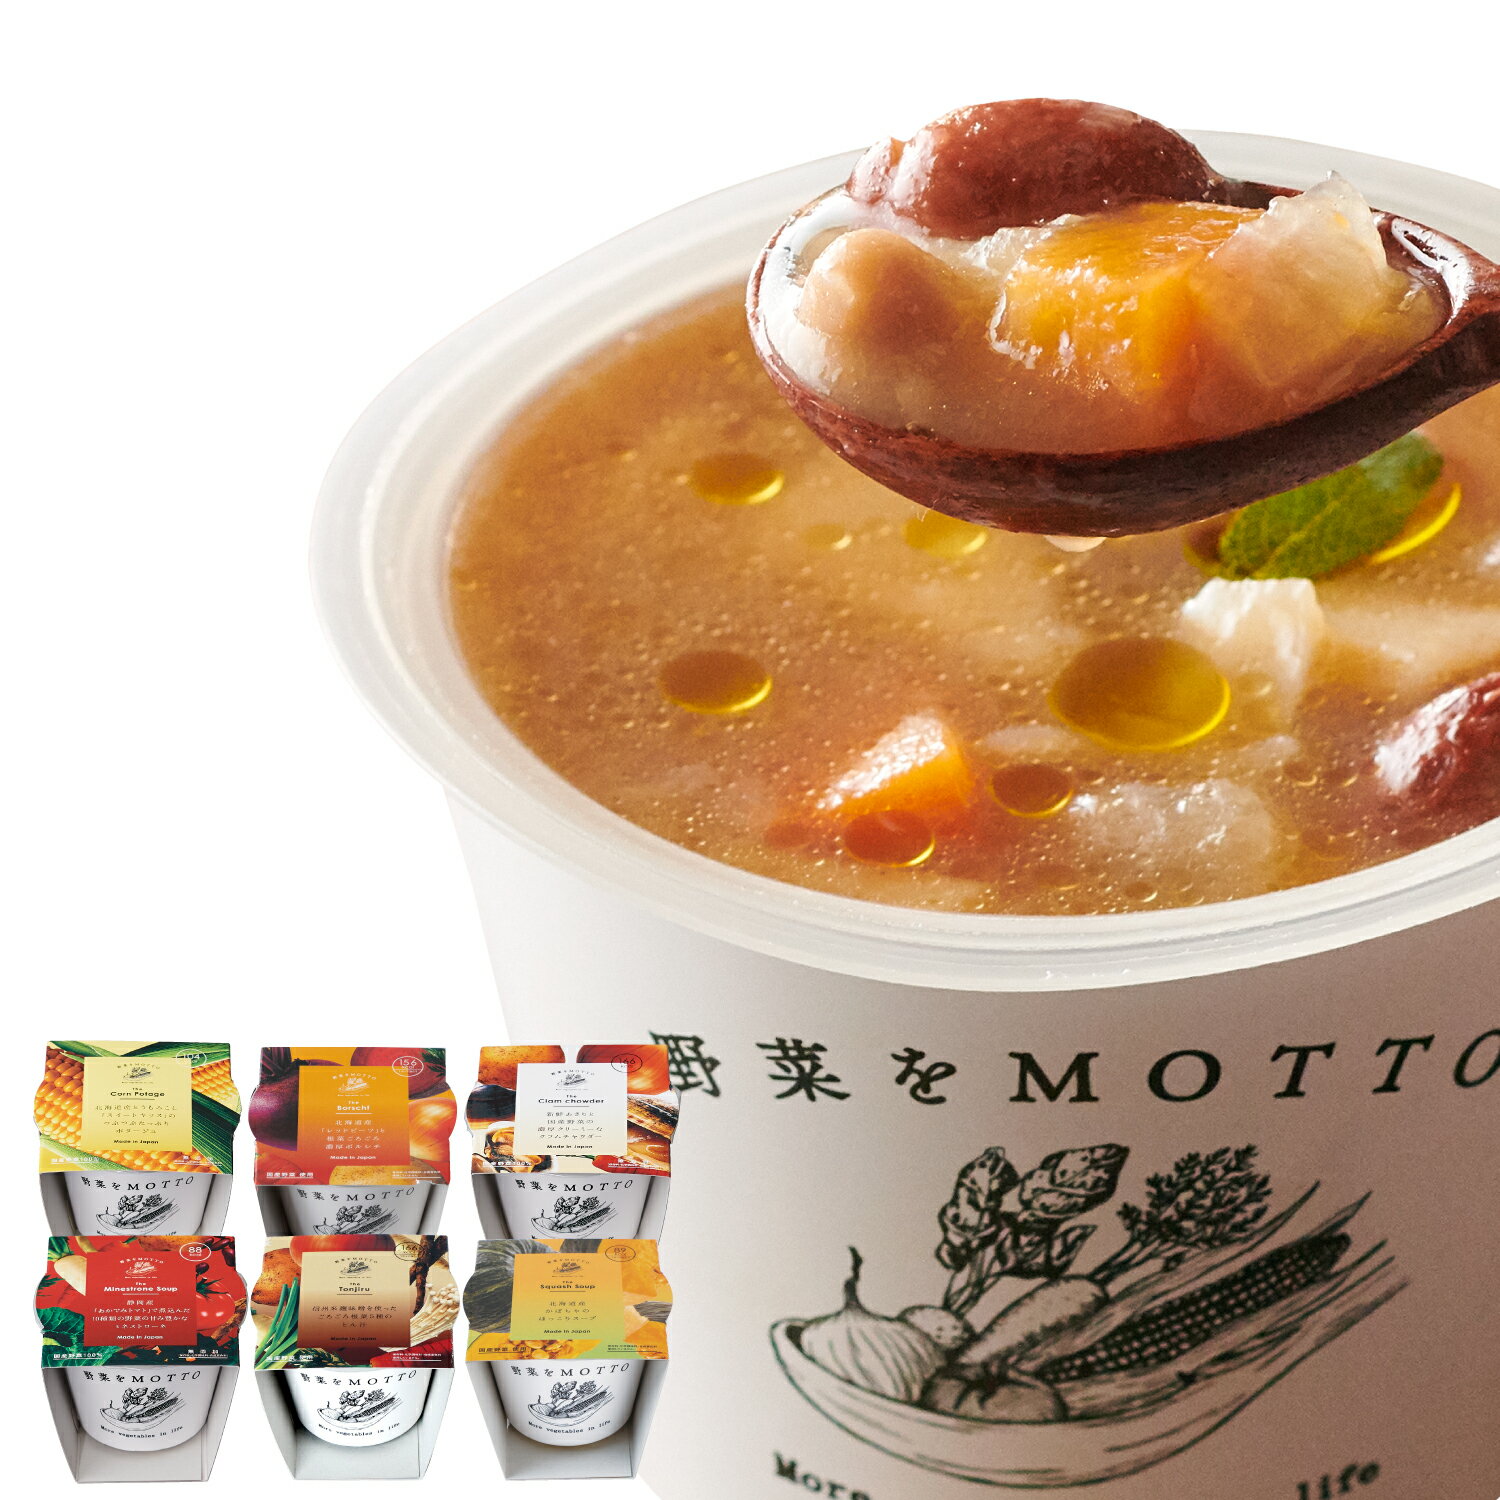 レンジ 1分 国産 野菜 食べる 本格 カップ スープ バラエティー 6個 セット 送料無料